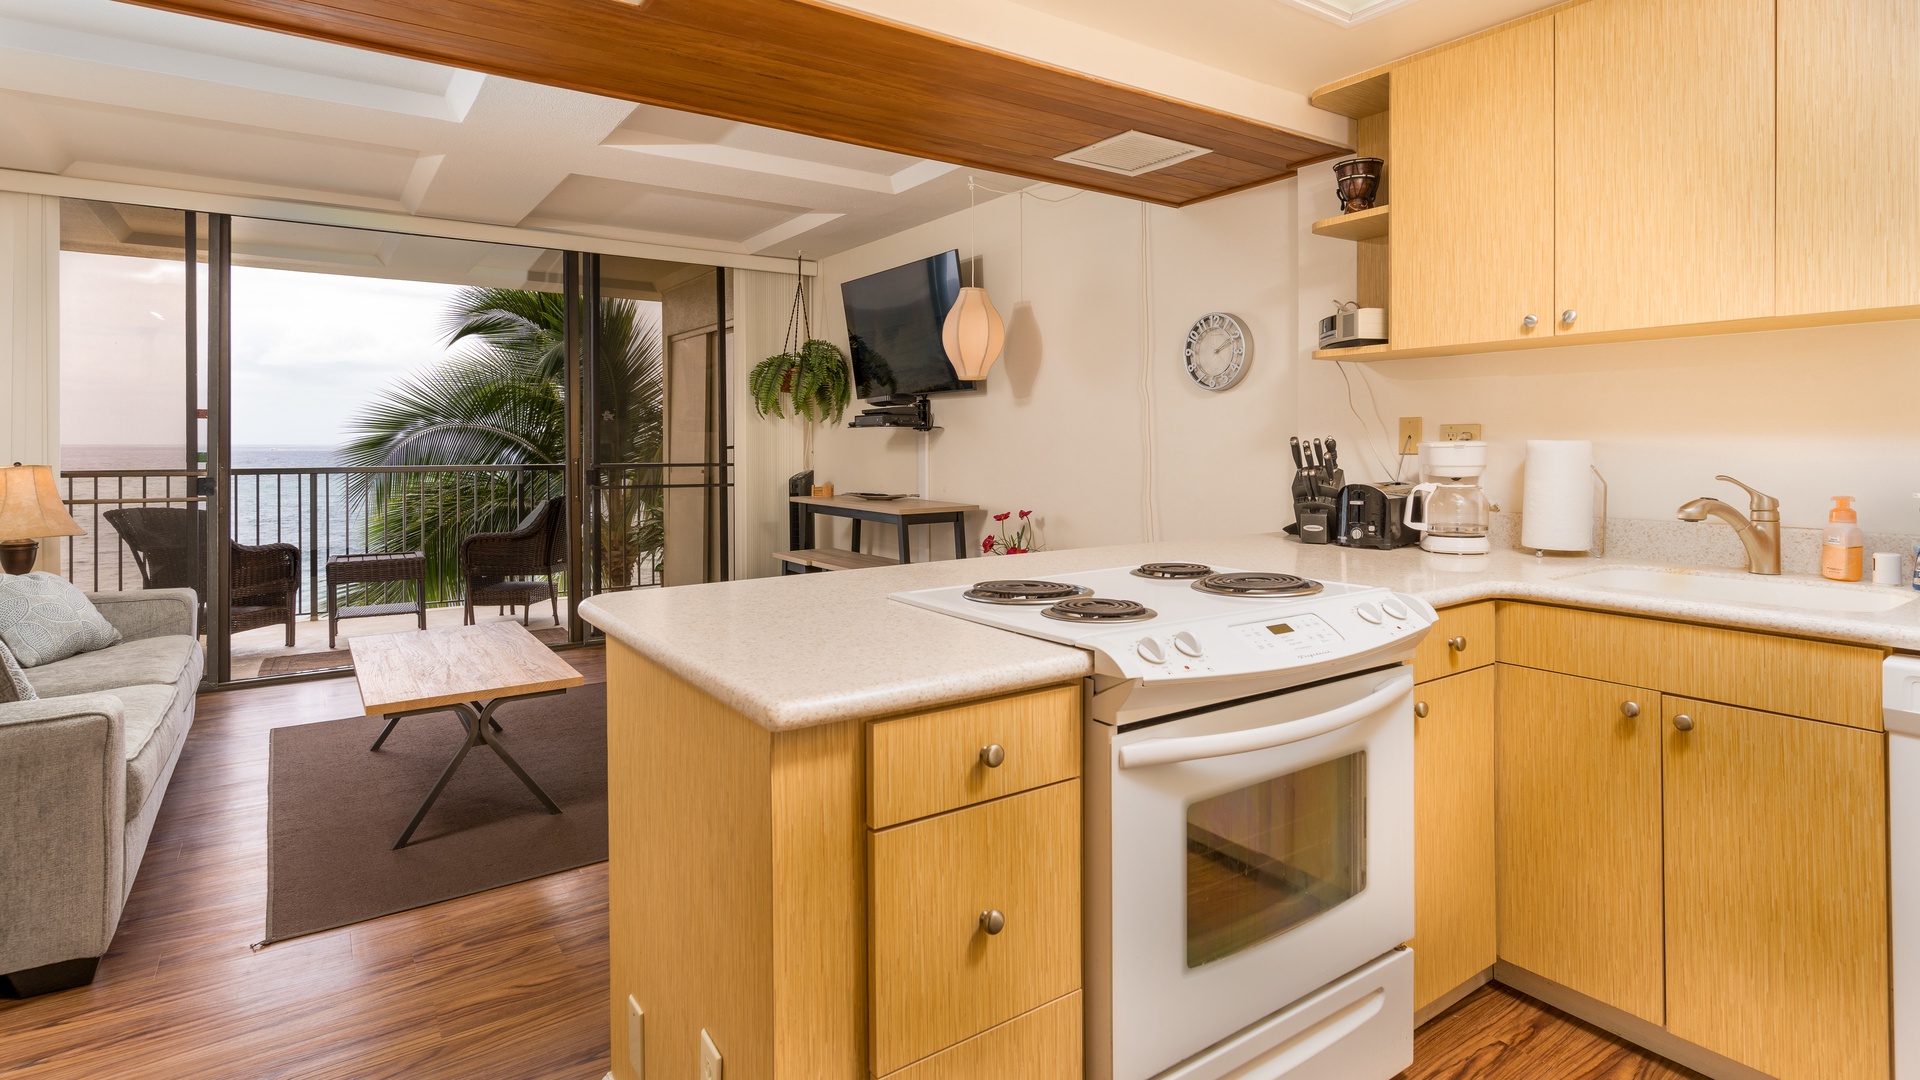 Waianae Vacation Rentals, Makaha - Hawaiian Princess - 305 - The kitchen with a view looking towards the lanai.